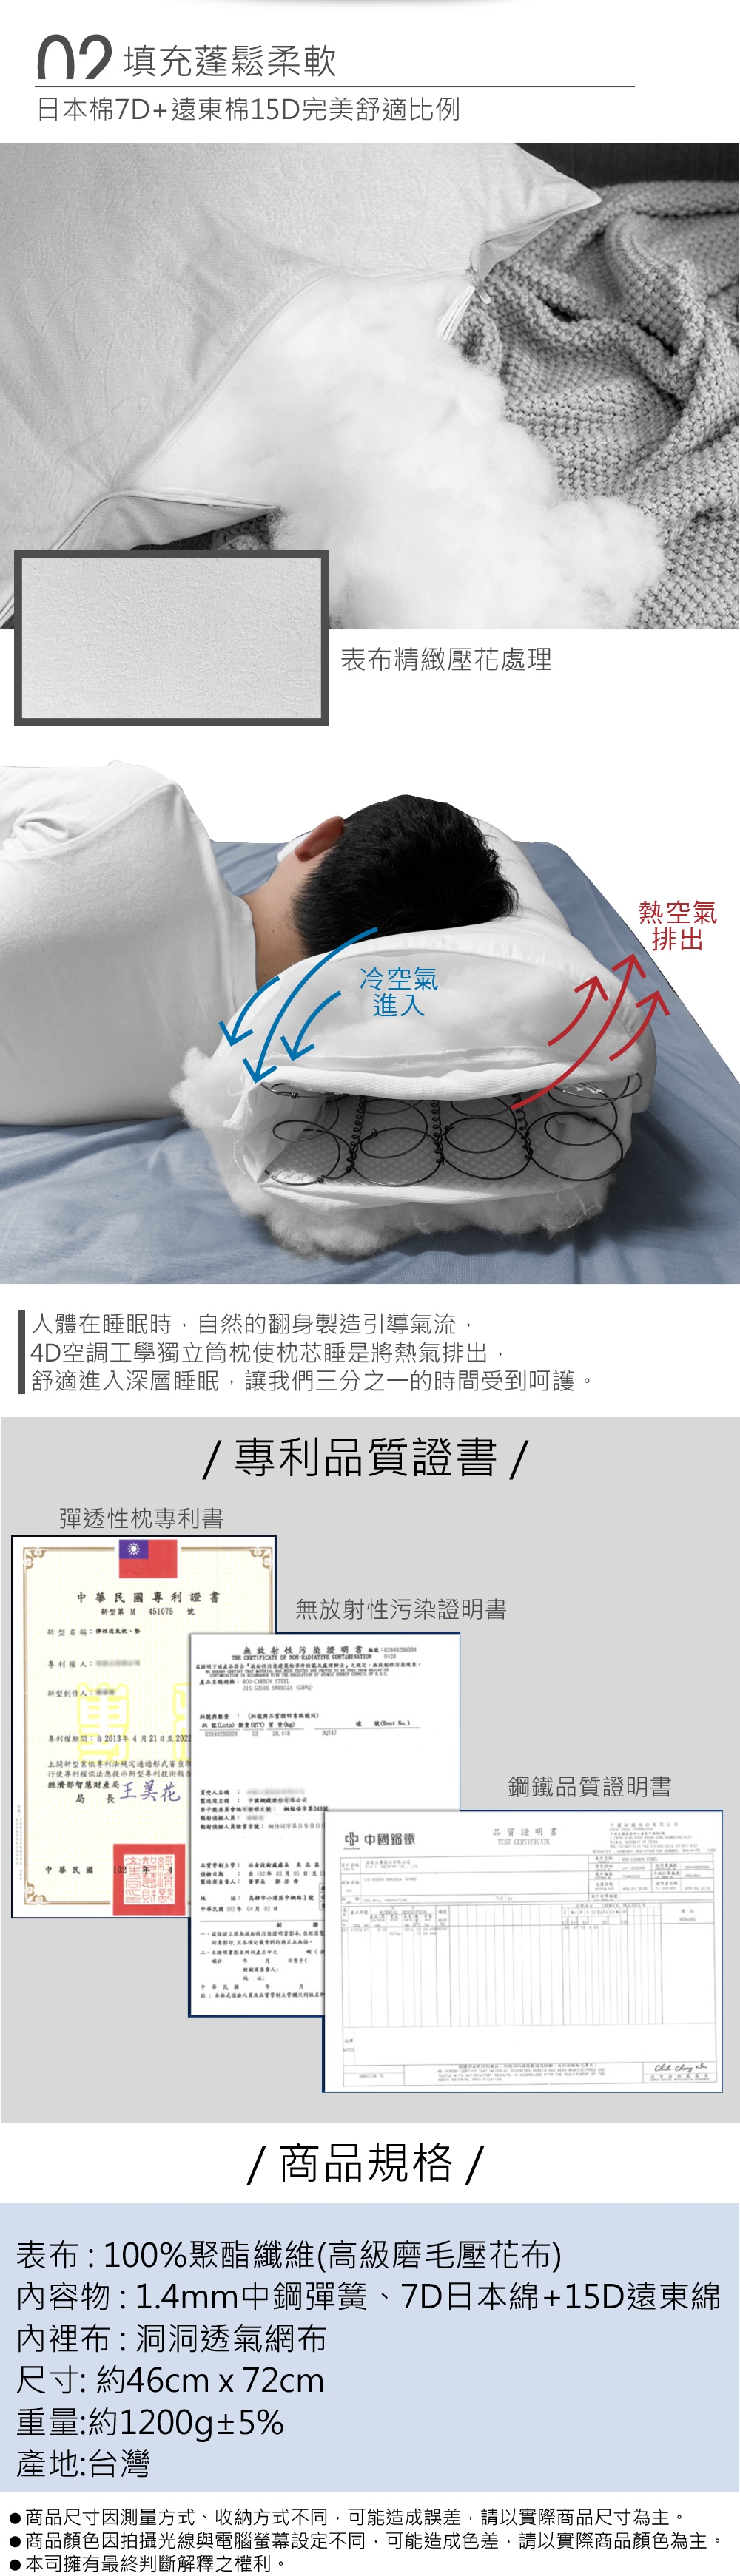 (限時下殺)You Can Buy 高科技石墨烯3D助眠枕/4D空調中鋼獨立筒枕 1入